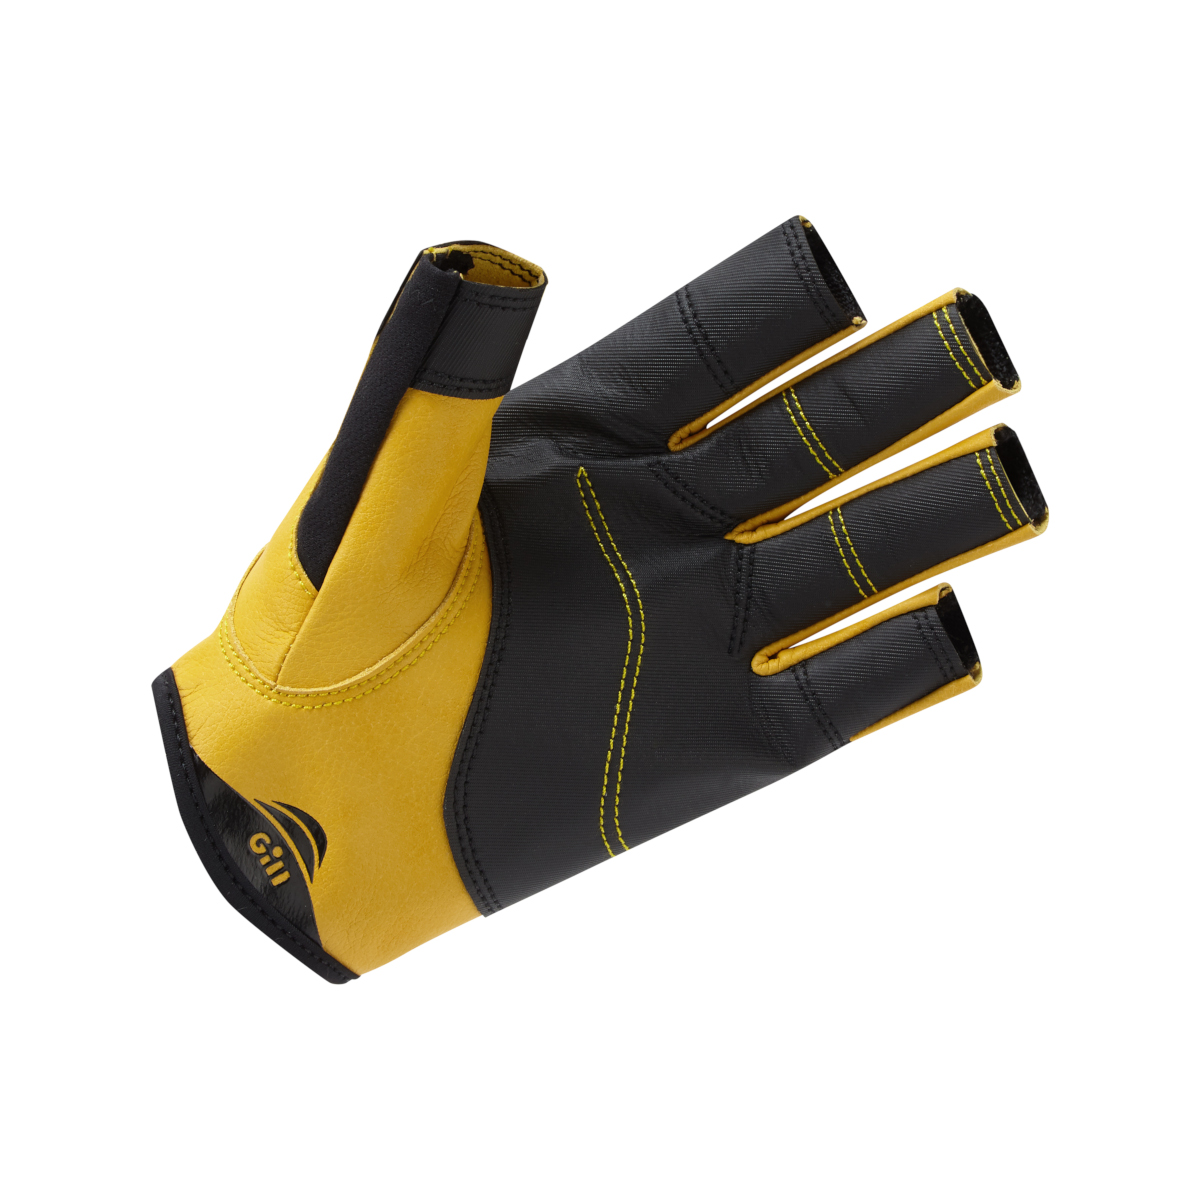 Gill Pro gants de voile à doigts courts - noir, taille S